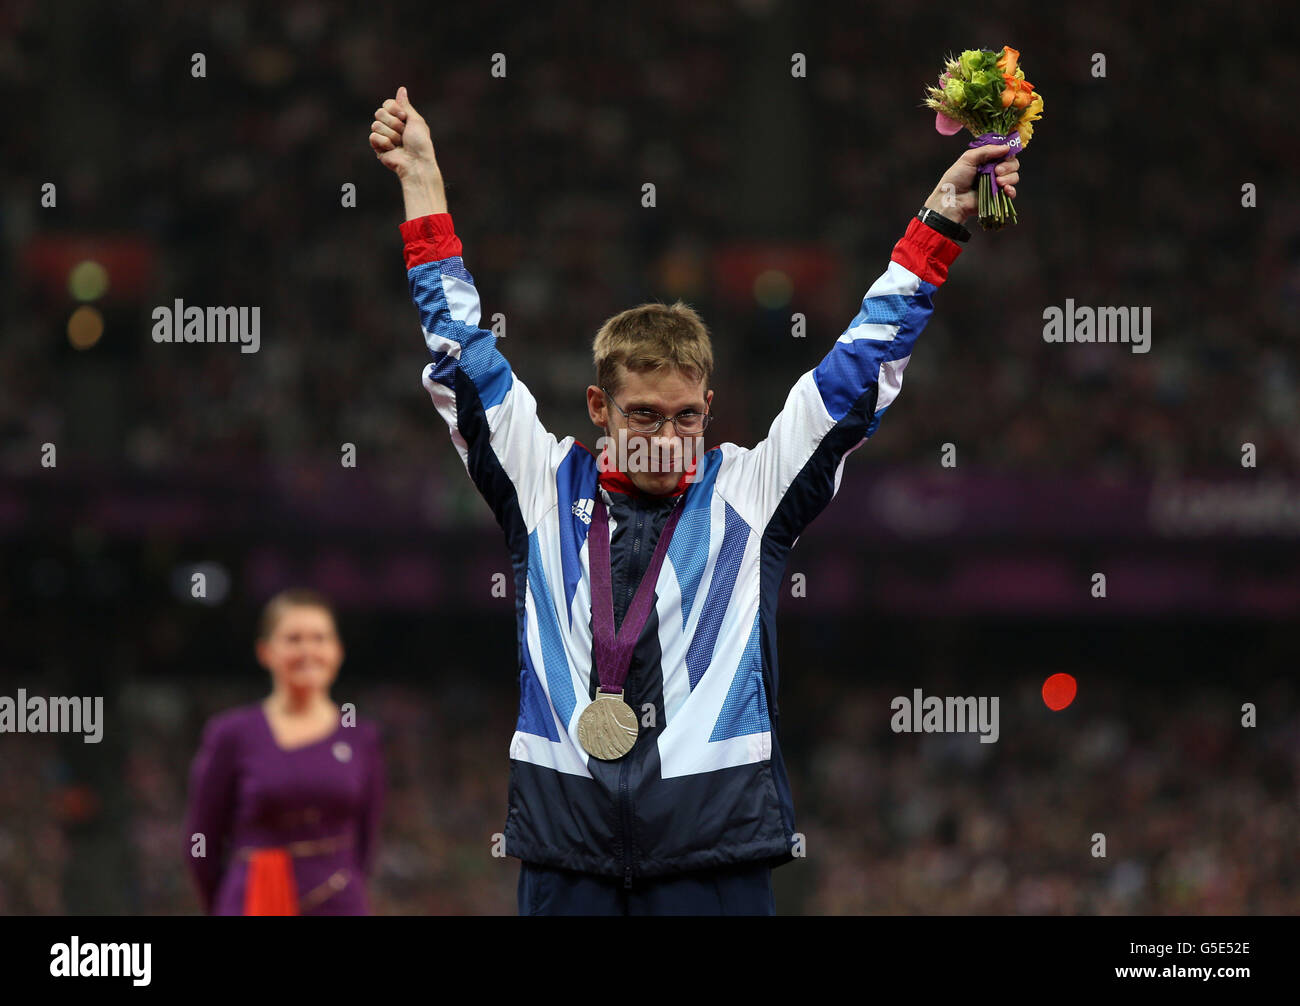 Jeux paralympiques de Londres - jour 4.Graeme Ballard, en Grande-Bretagne, célèbre la victoire de l'argent dans le 100m masculin - T36 au stade olympique de Londres. Banque D'Images